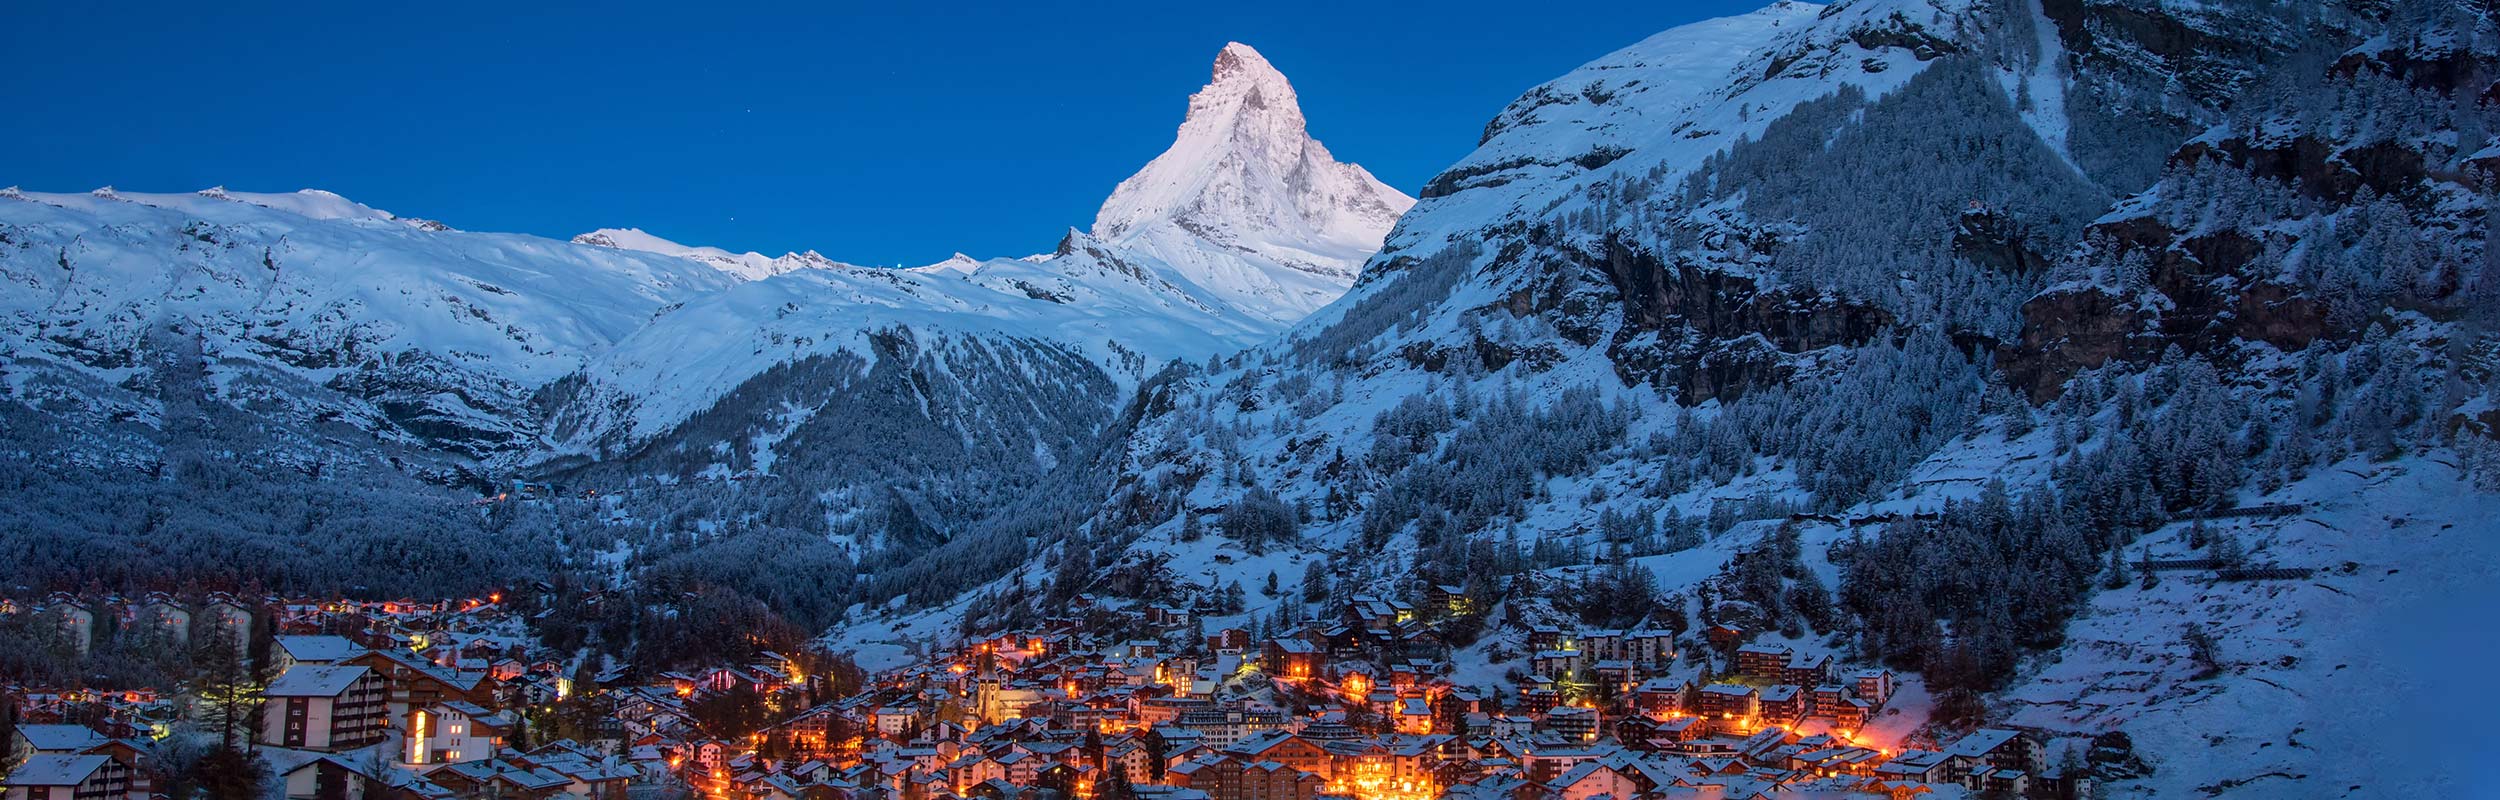 Zermatt am Abend mit Matterhorn